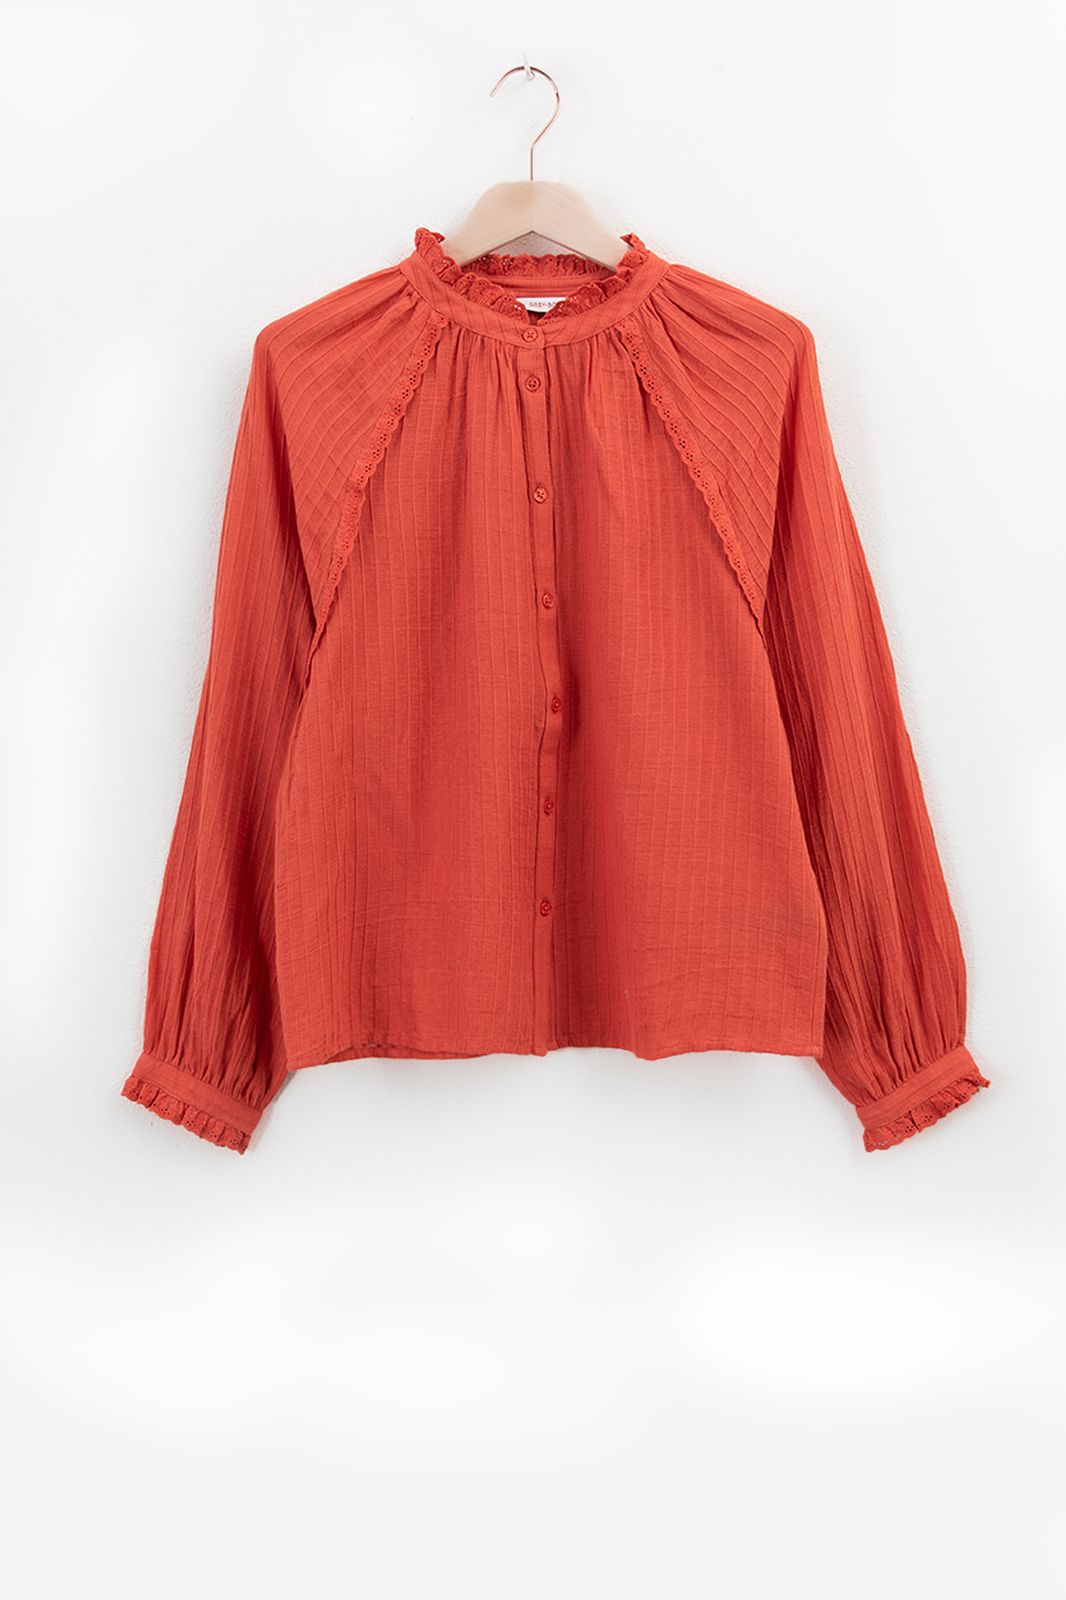 Bluse mit Spitzen-Details - rot